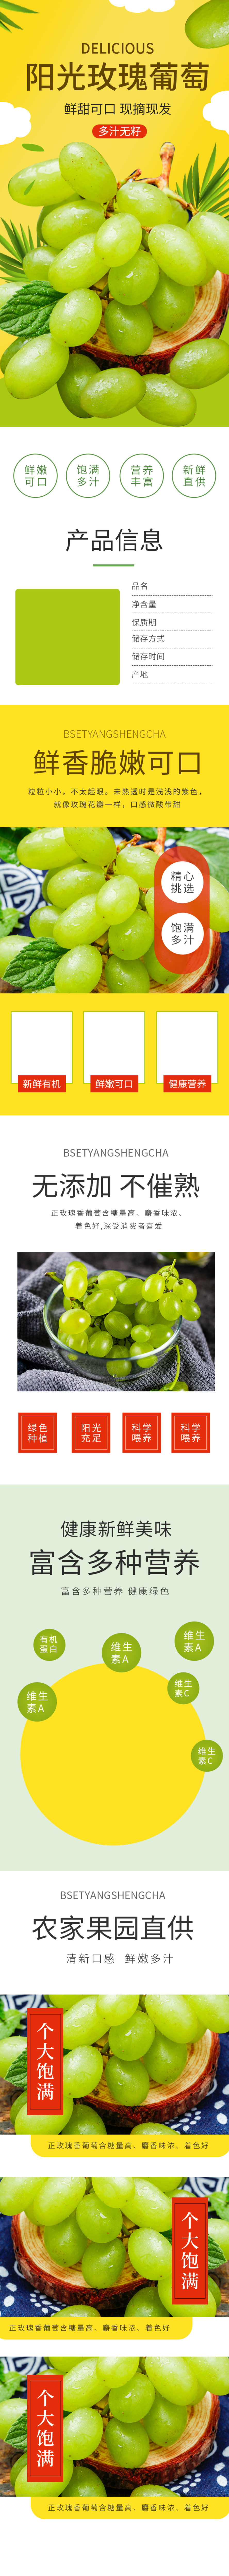 电商水果生鲜食品阳光玫瑰葡萄详情页